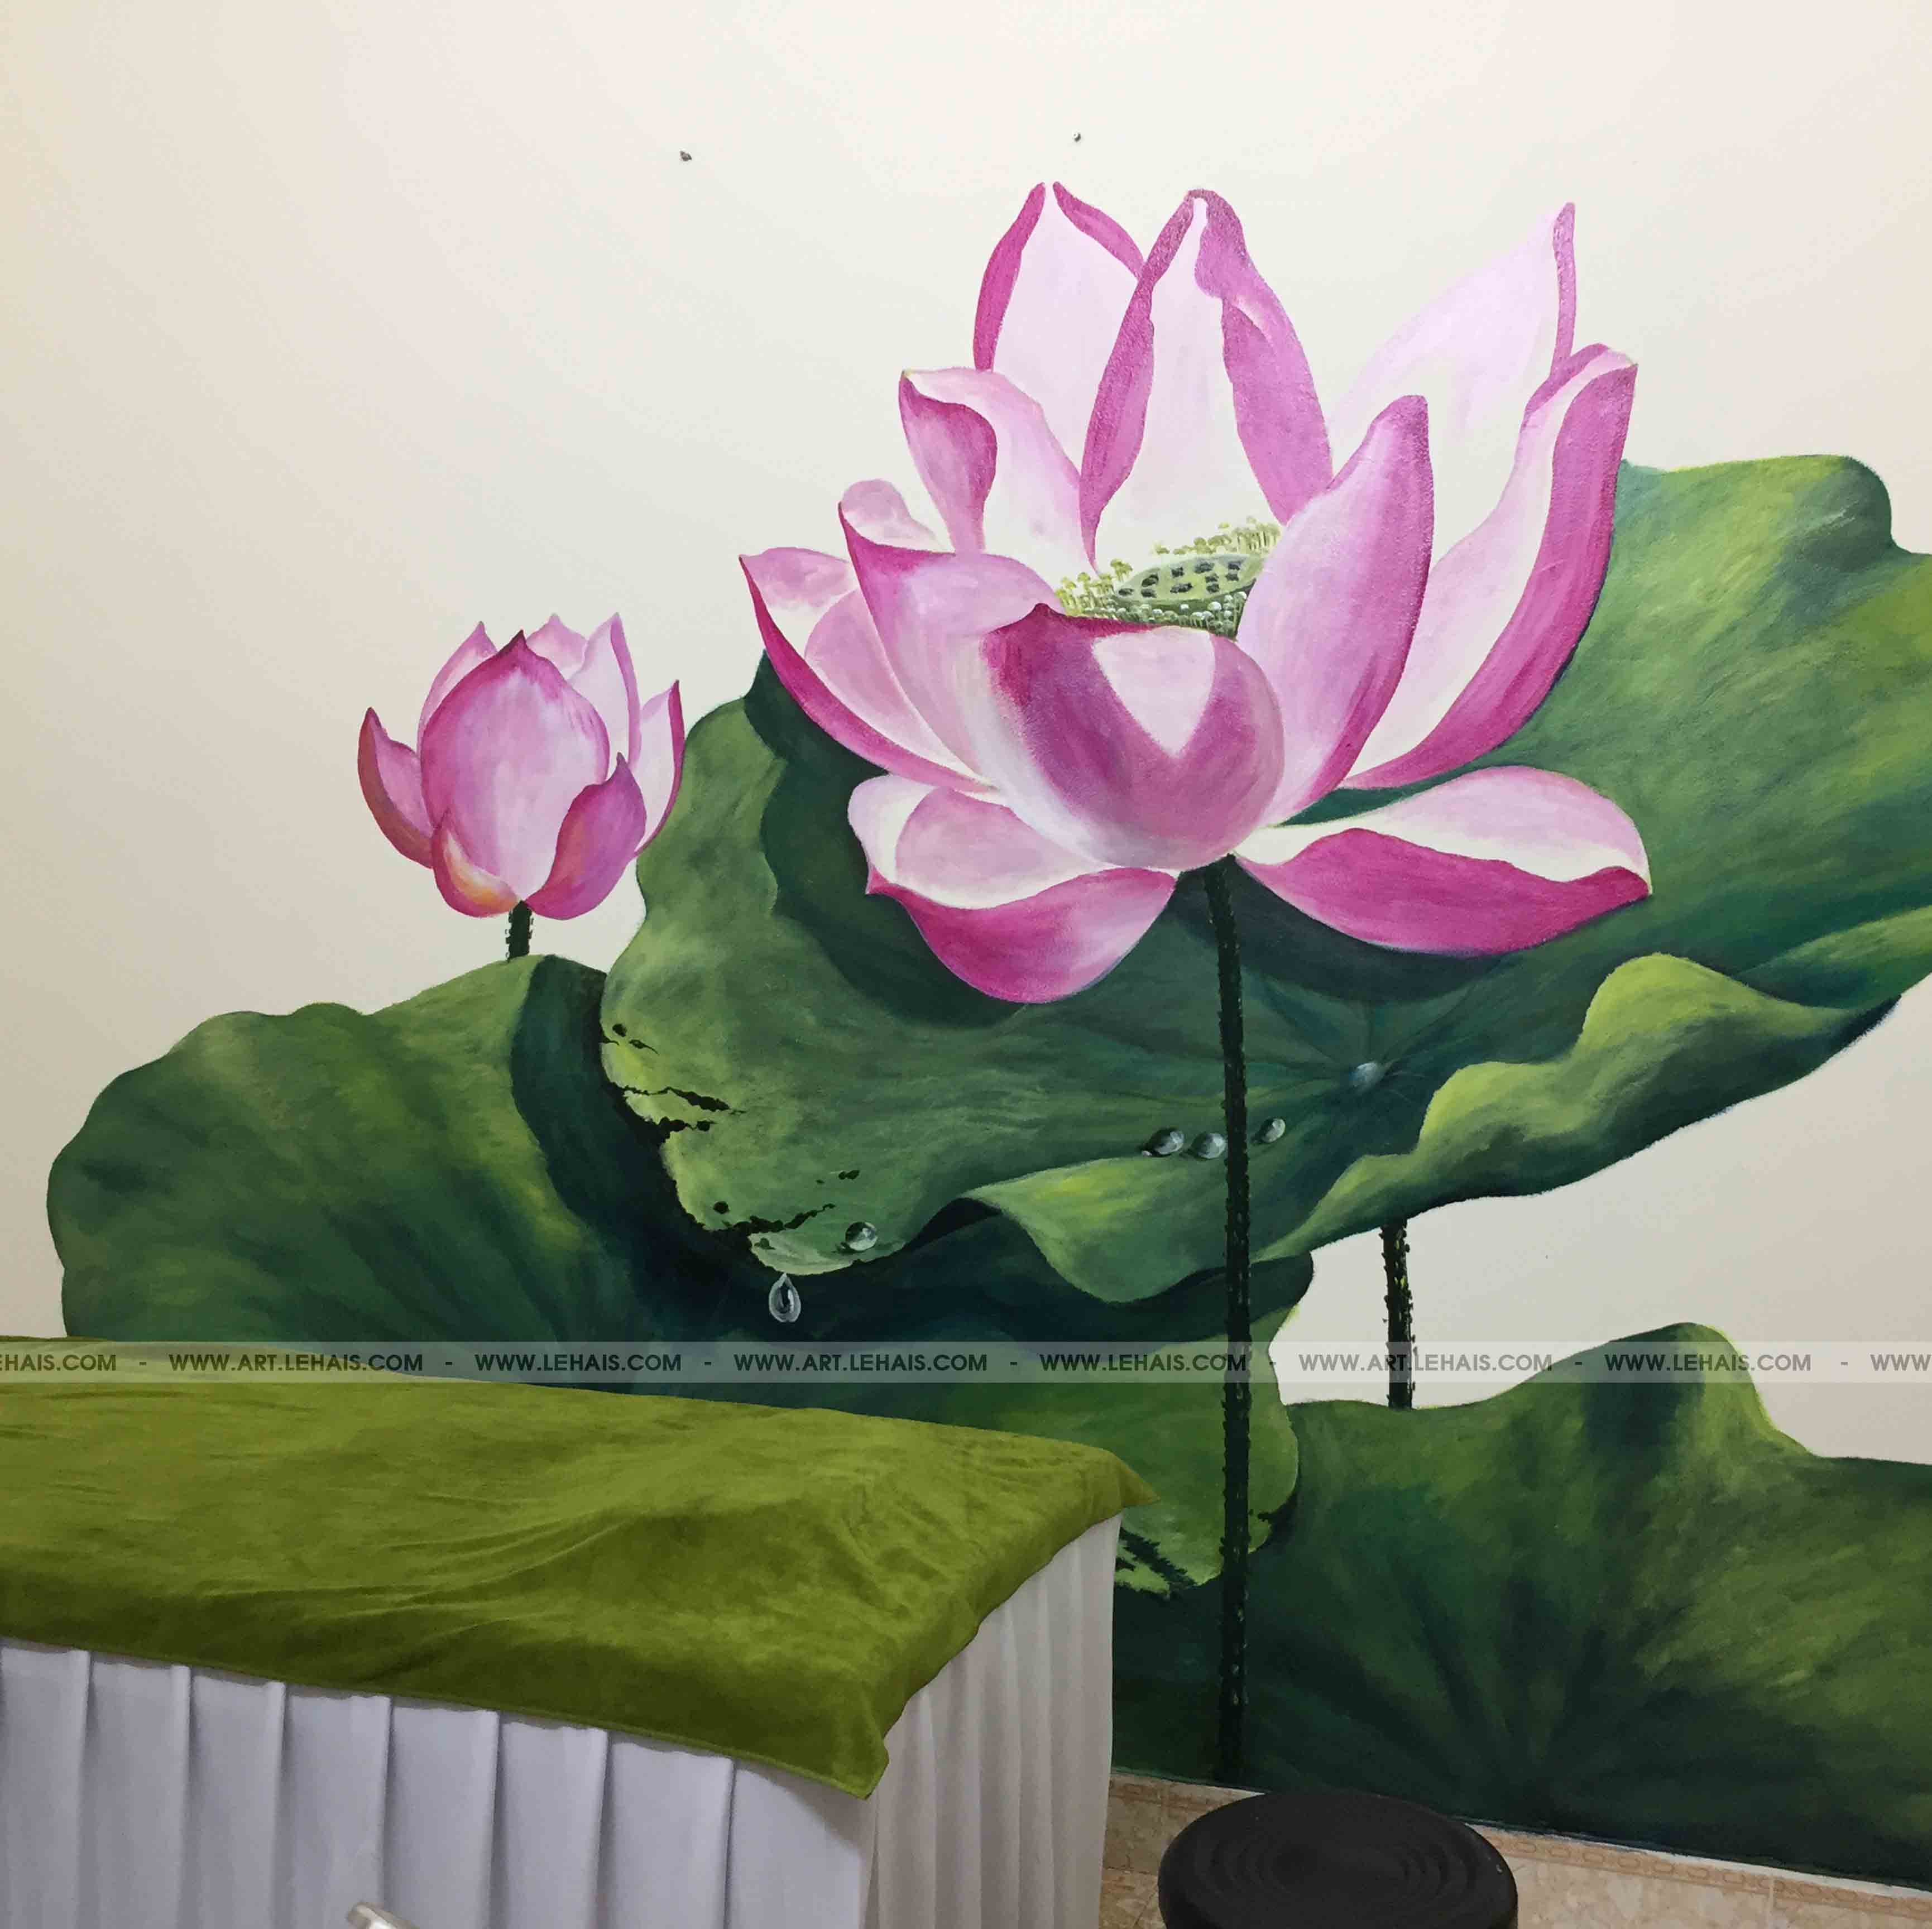 Vẽ tranh hoa sen 3D tại Spa, Lạc Trung, Hà Nội - TT170LHAR